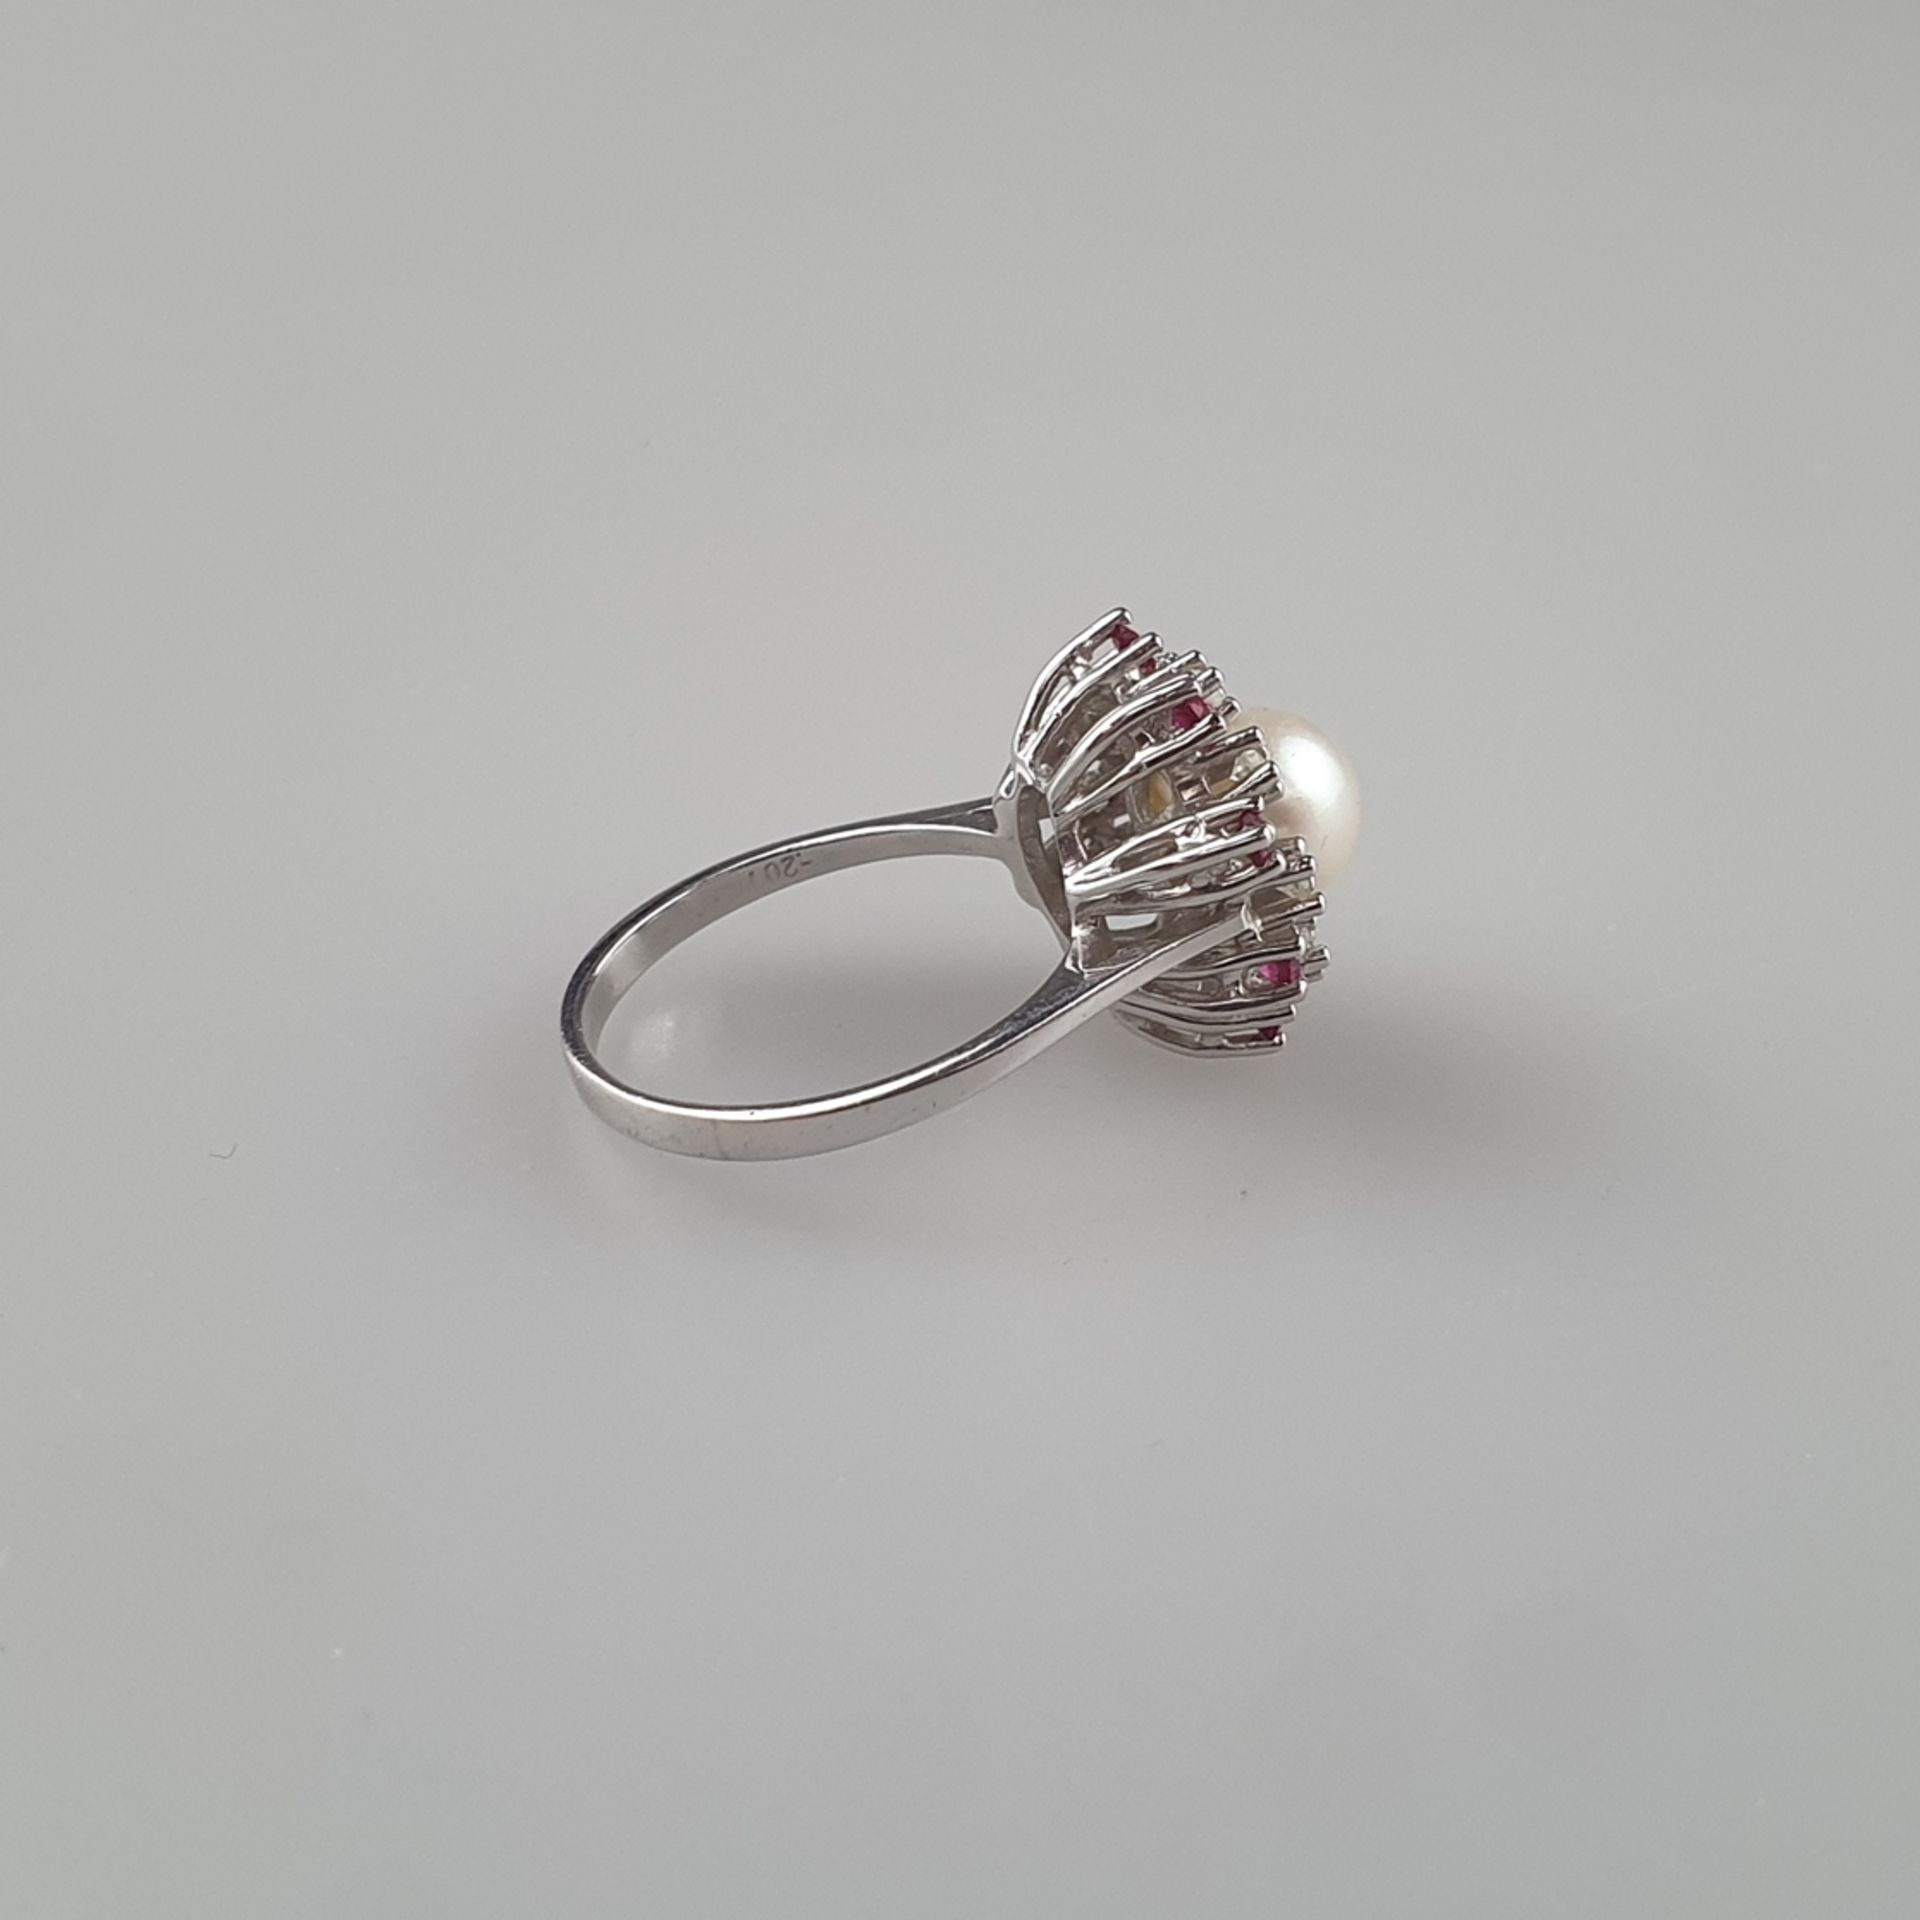 Perlring mit Diamant- und Rubinbesatz - Gelbgold 585/000 (14K), gestempelt, zentrale Perle von 8mm- - Bild 4 aus 7